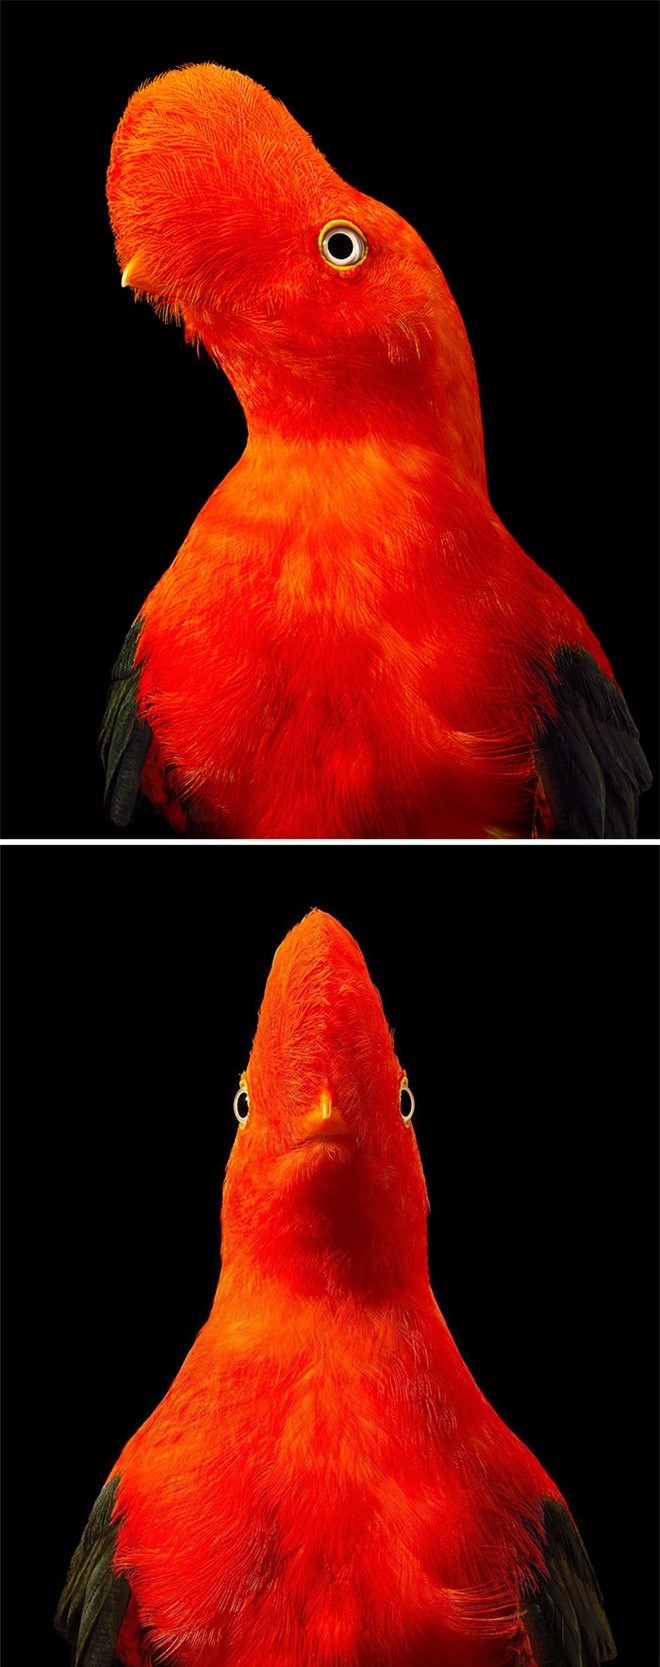 Đầu cắt moi đến râu quai nón - chùm ảnh chân dung cực nghệ của một số loài chim siêu hiếm có khó tìm - Ảnh 5.